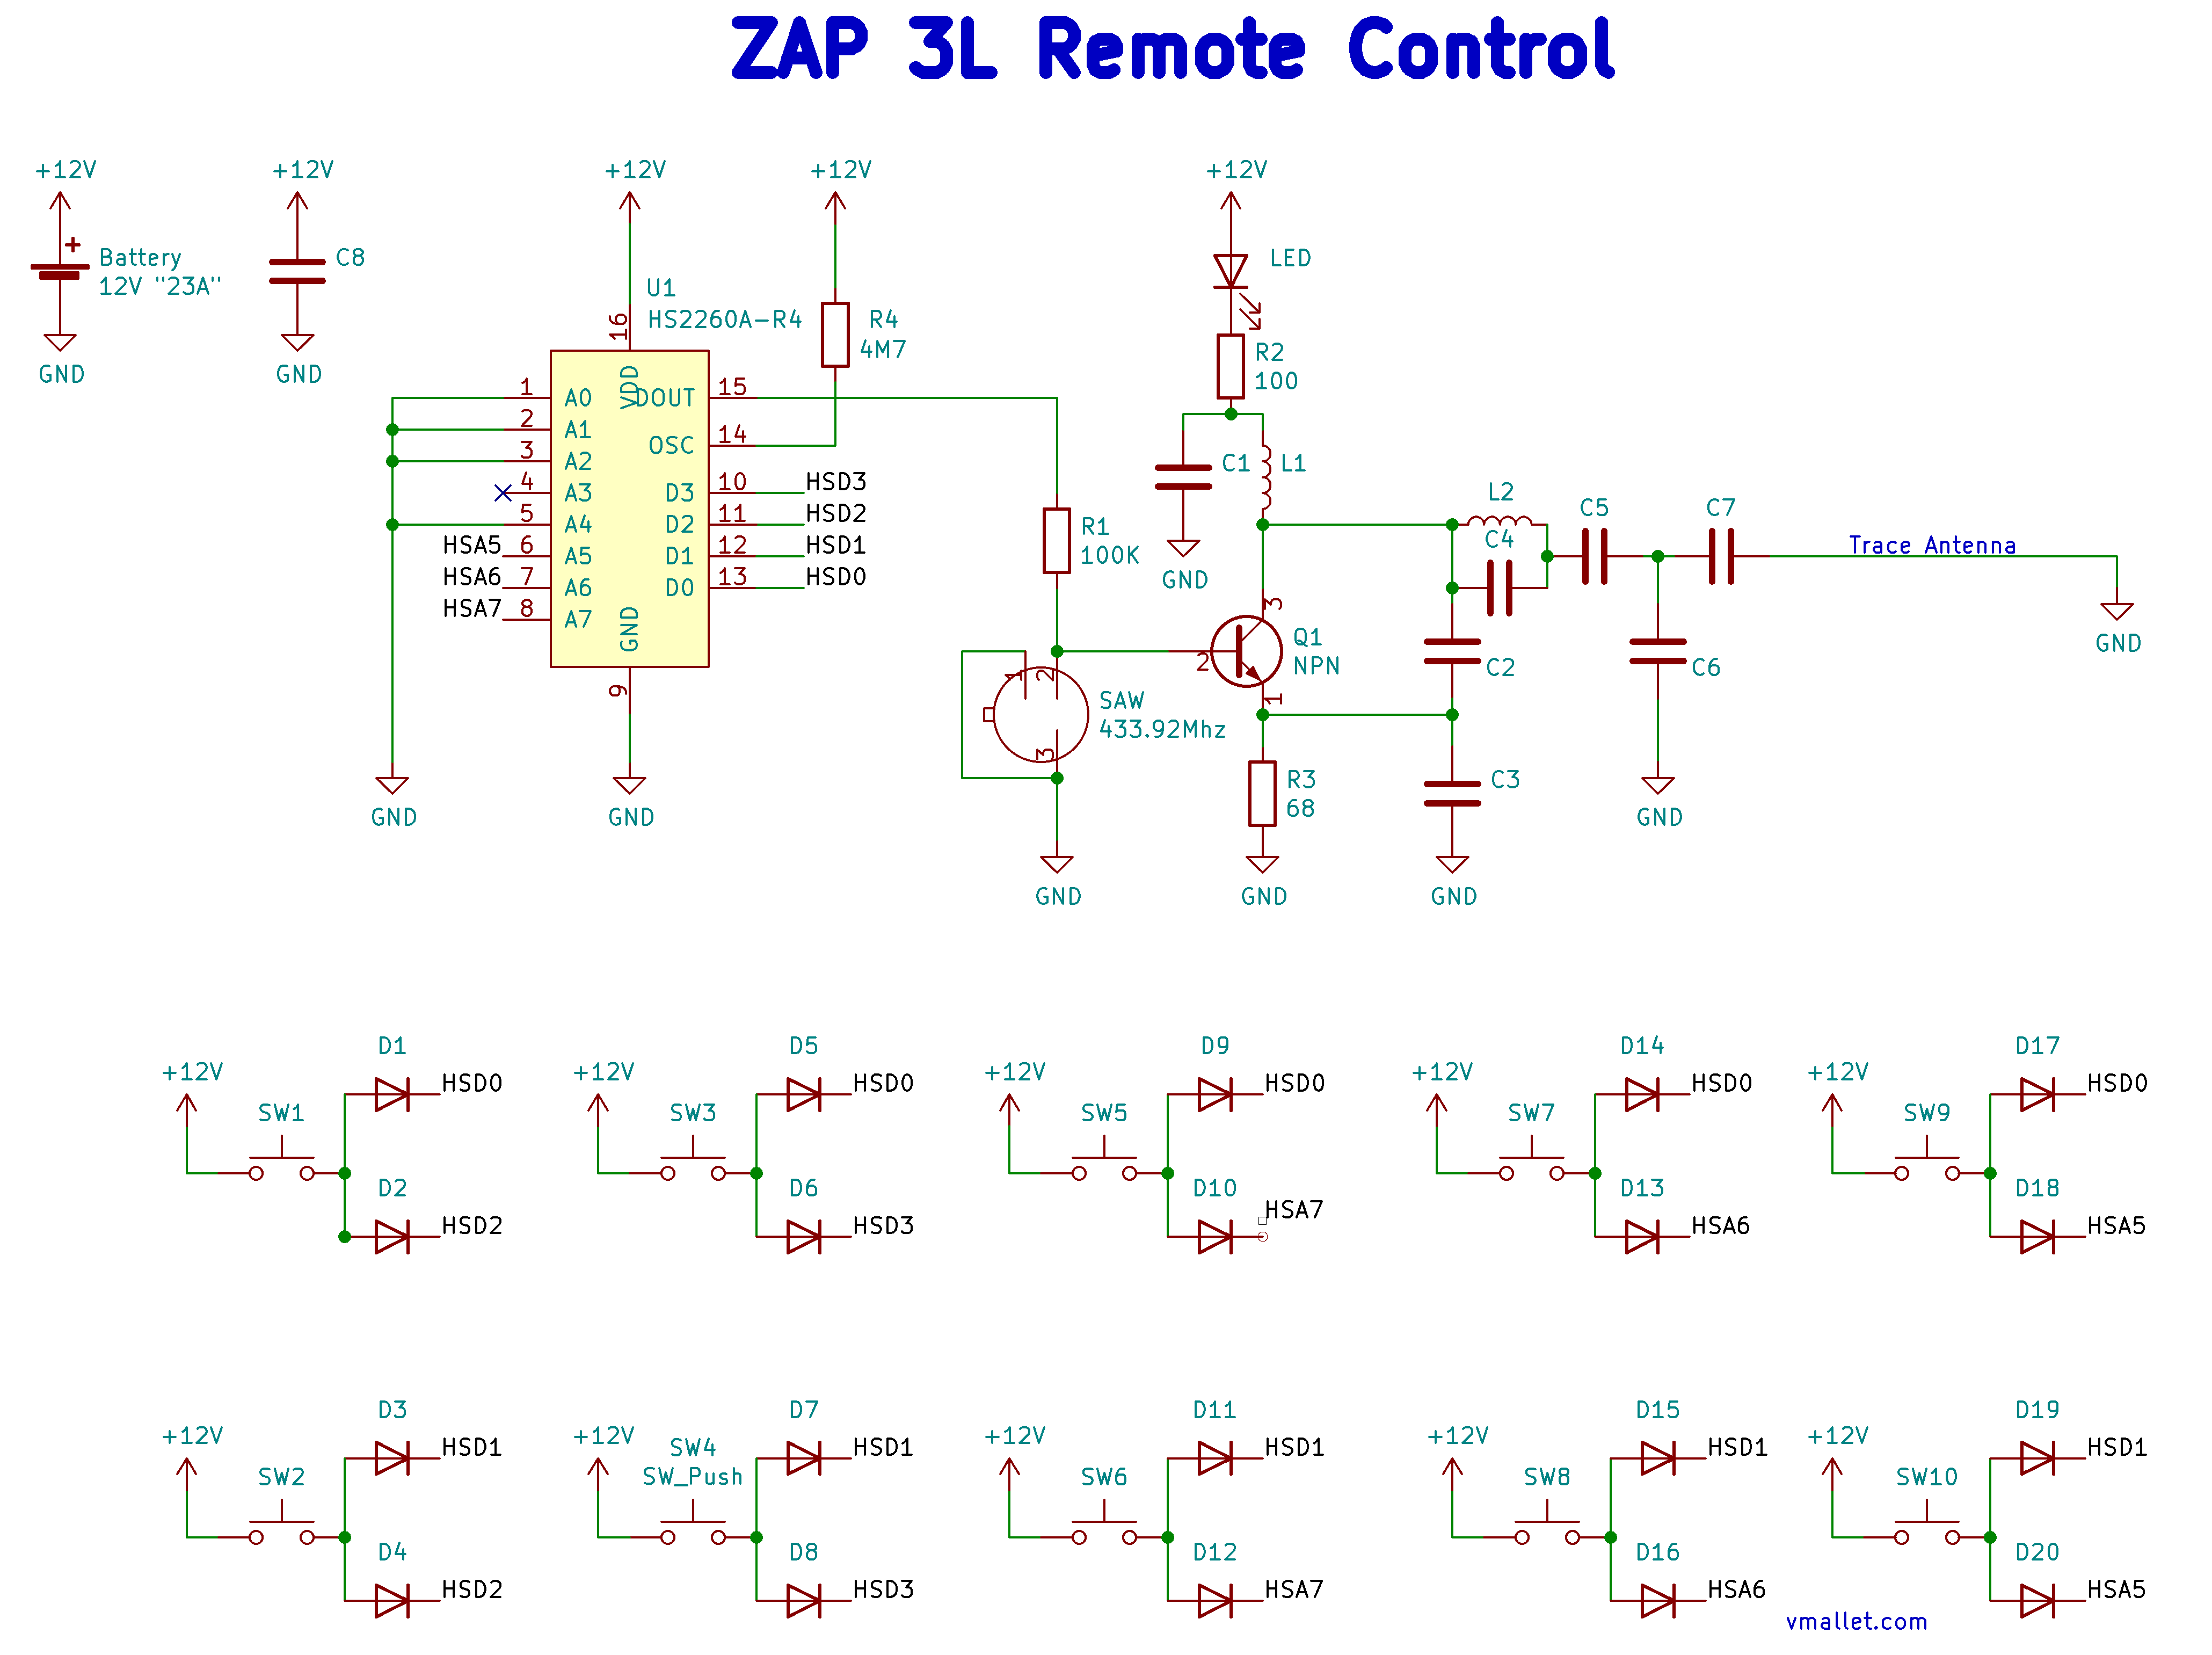 https://vmallet.com/wp-content/uploads/2020/06/EtekcityZap3L-Remote-PCB-Schematics.png